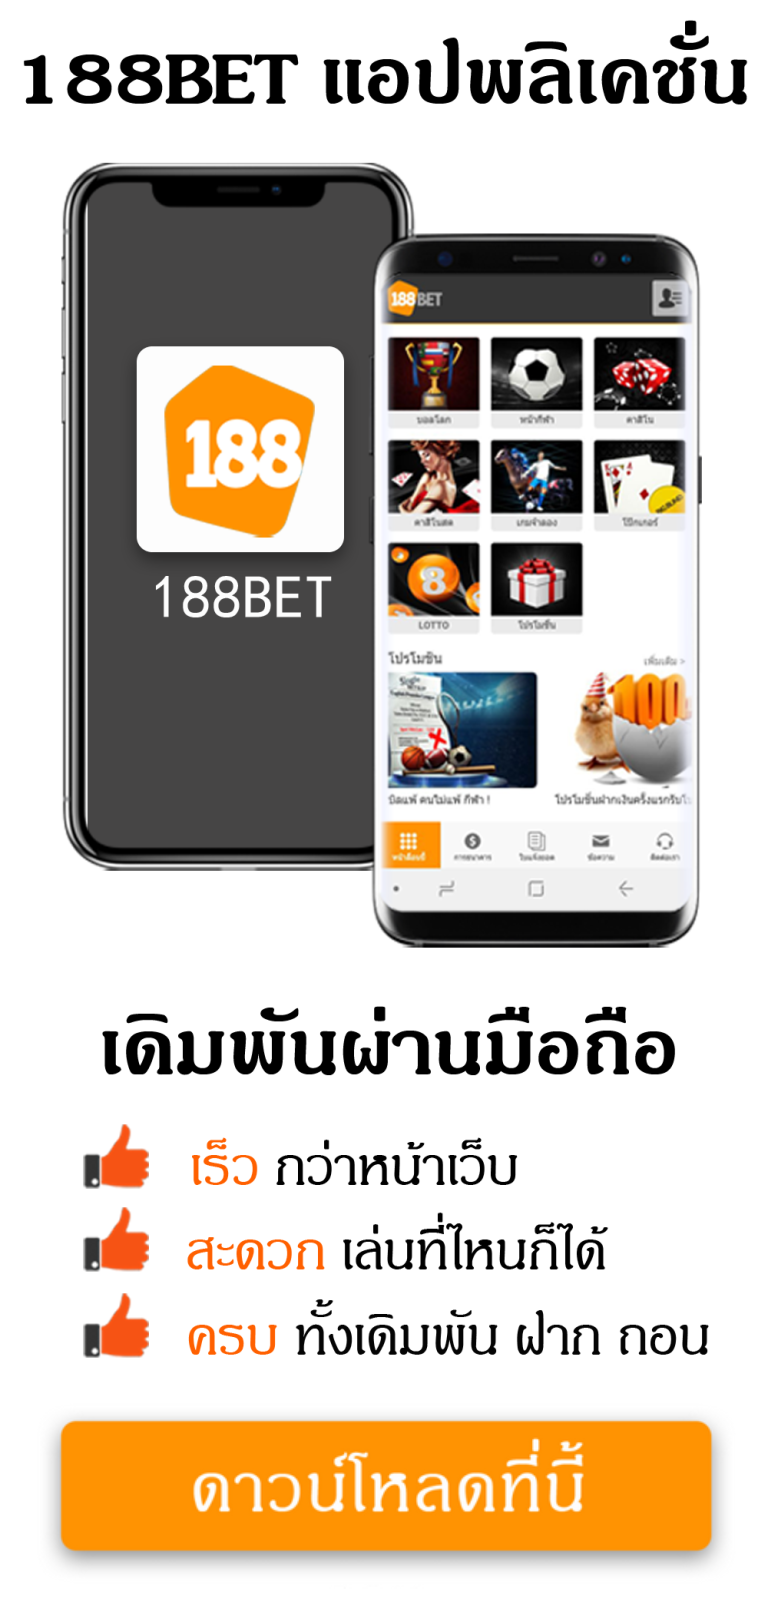 Mobile App v3 Revised - 188BET ดีไหม?